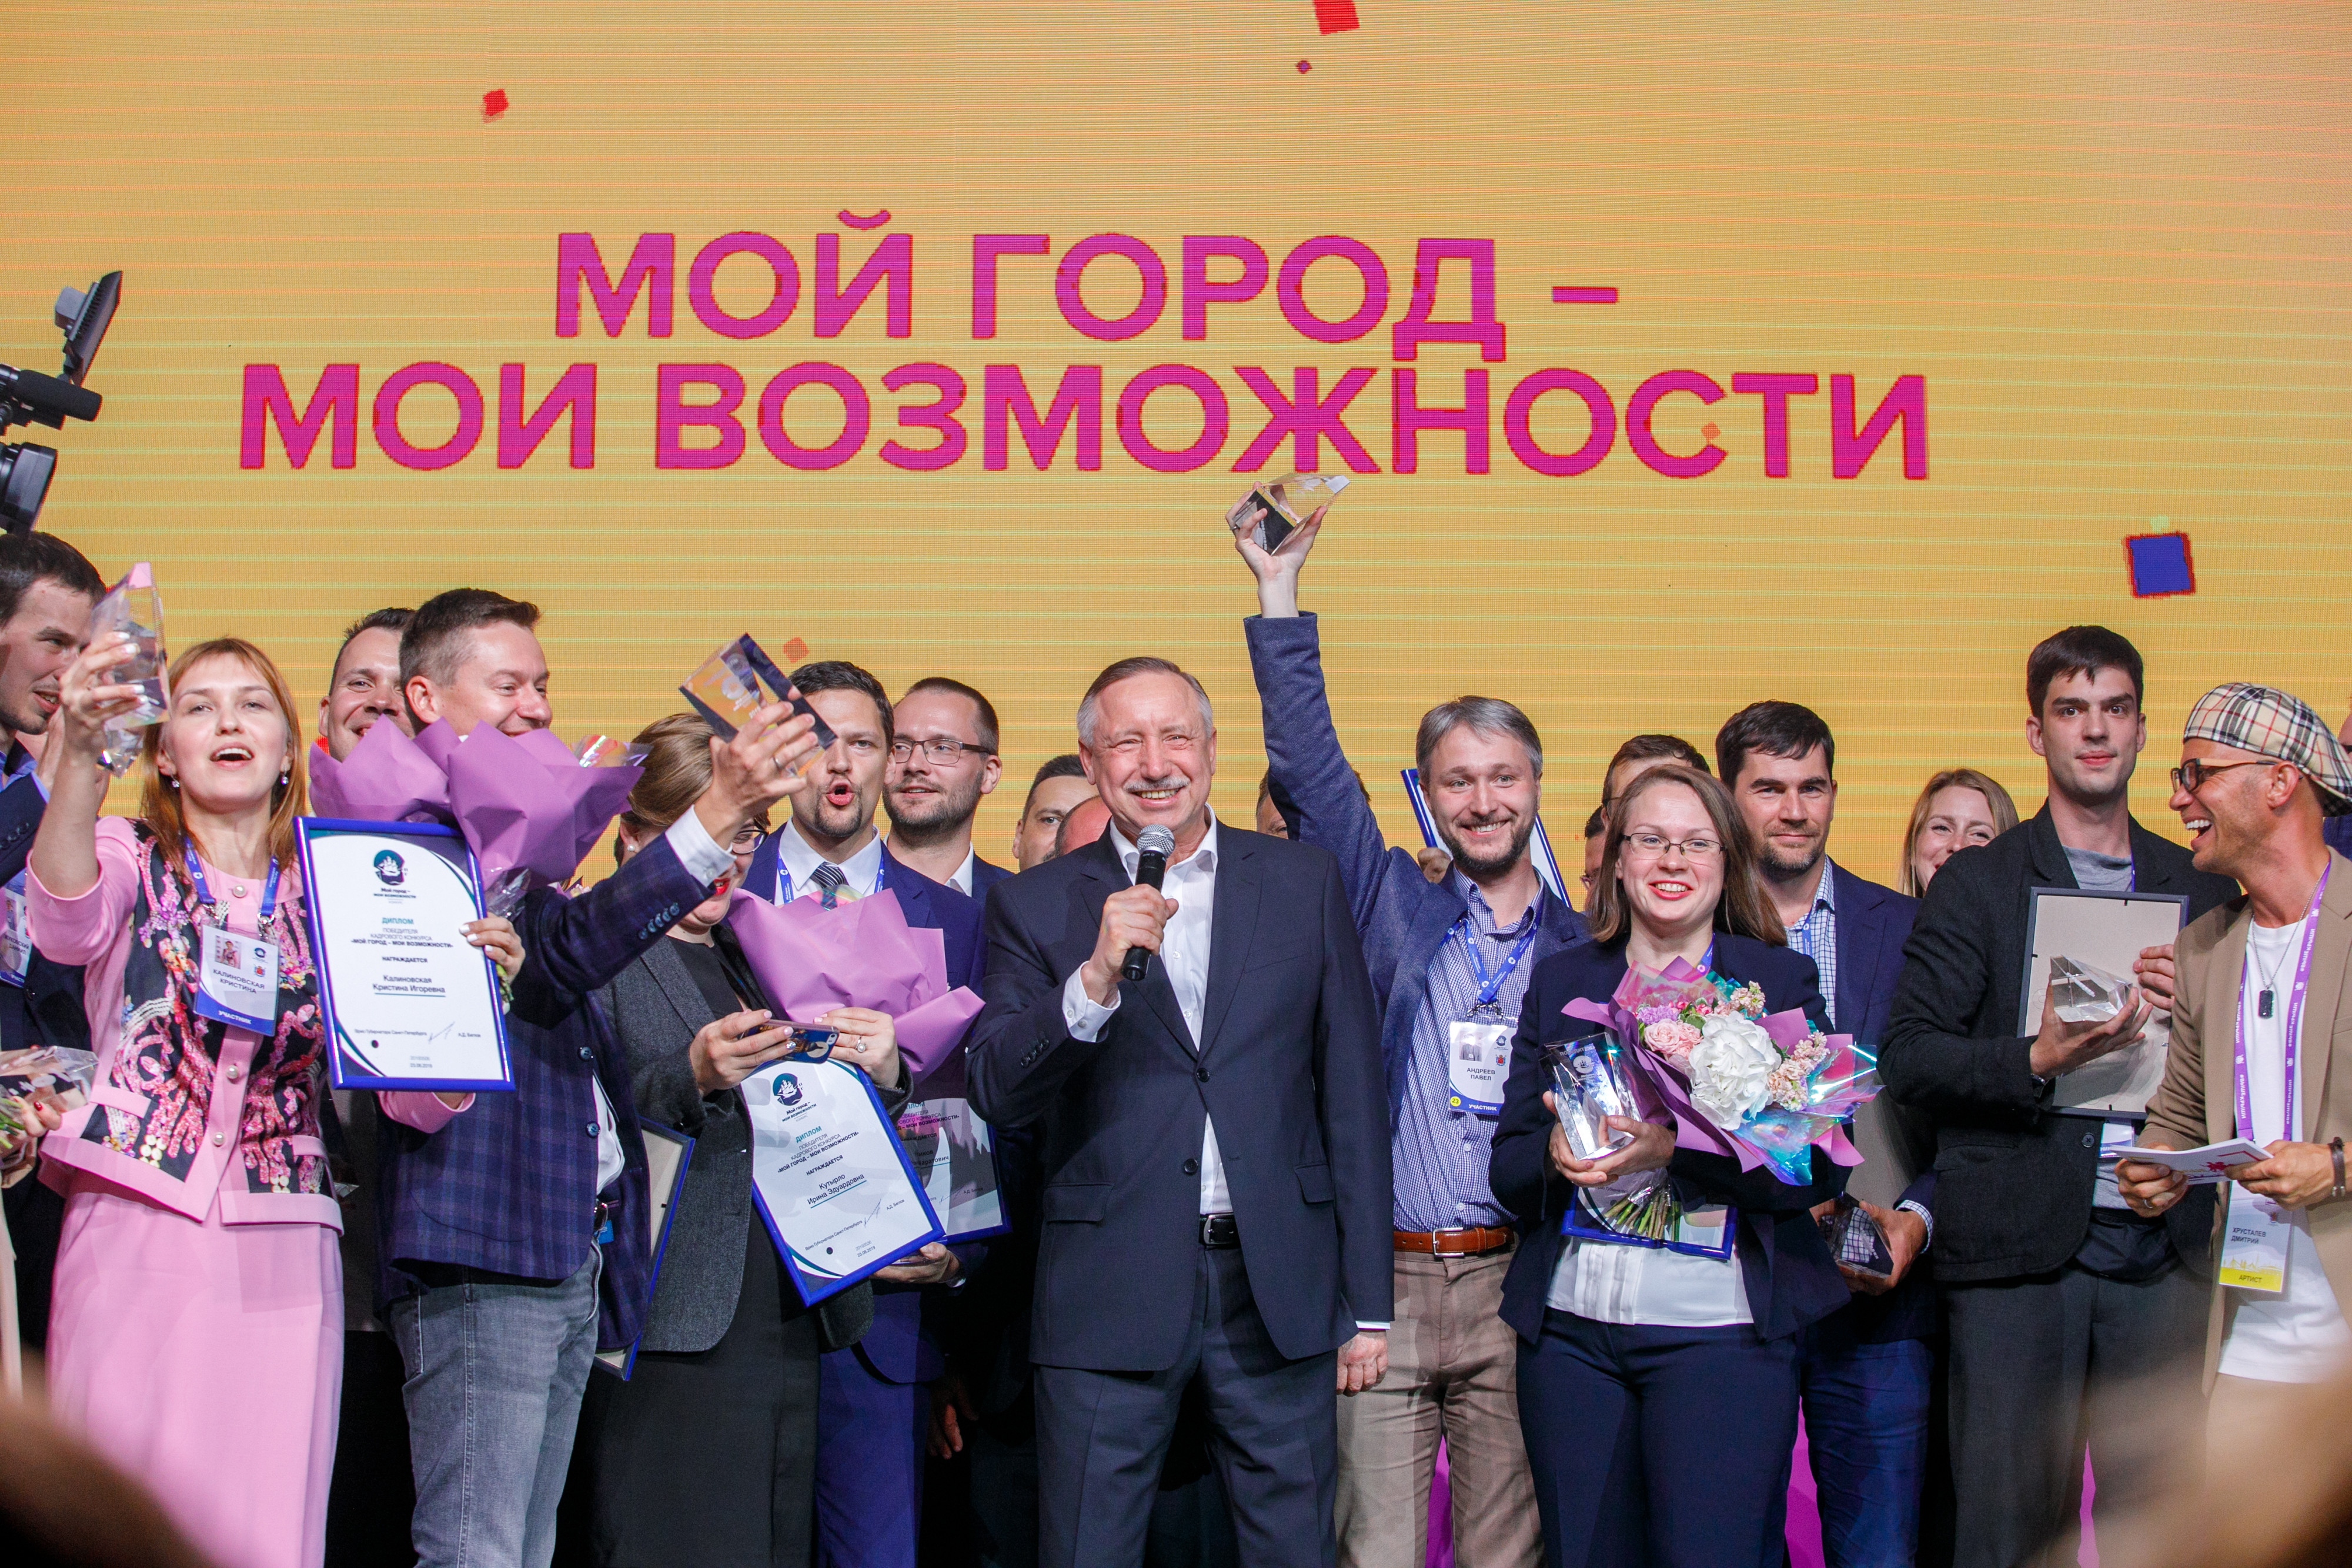 Фото © Комитет по молодёжной политике и взаимодействию с общественными организациями Санкт-Петербурга
